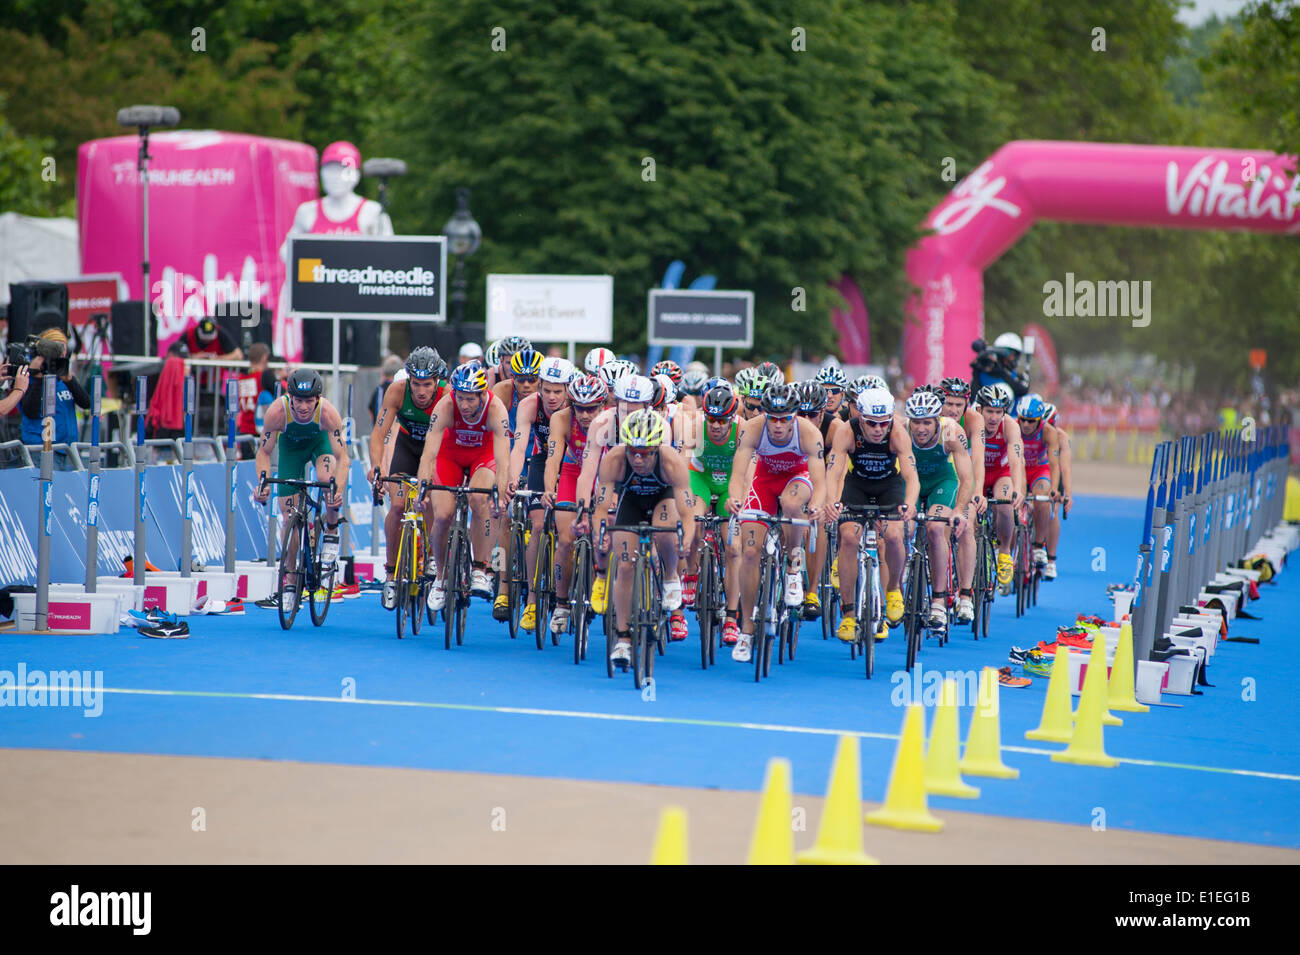 Cycling Kurs der PruHealth World Triathlon am Hyde Park, 2014 mit großen Gruppe von Fahrern, die Annäherung an Stockfoto